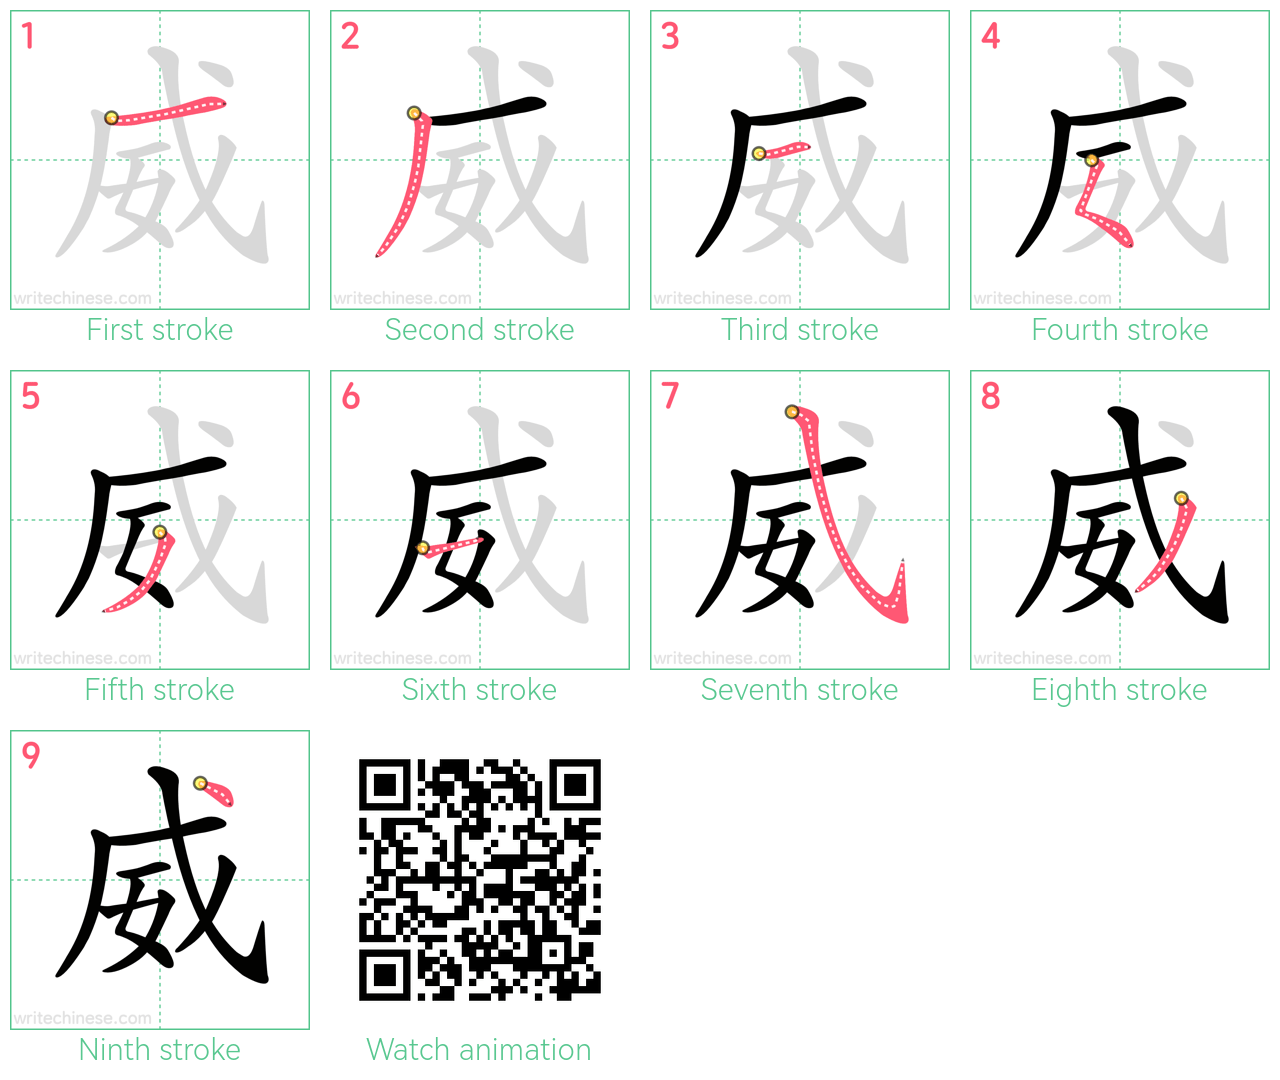 威 step-by-step stroke order diagrams